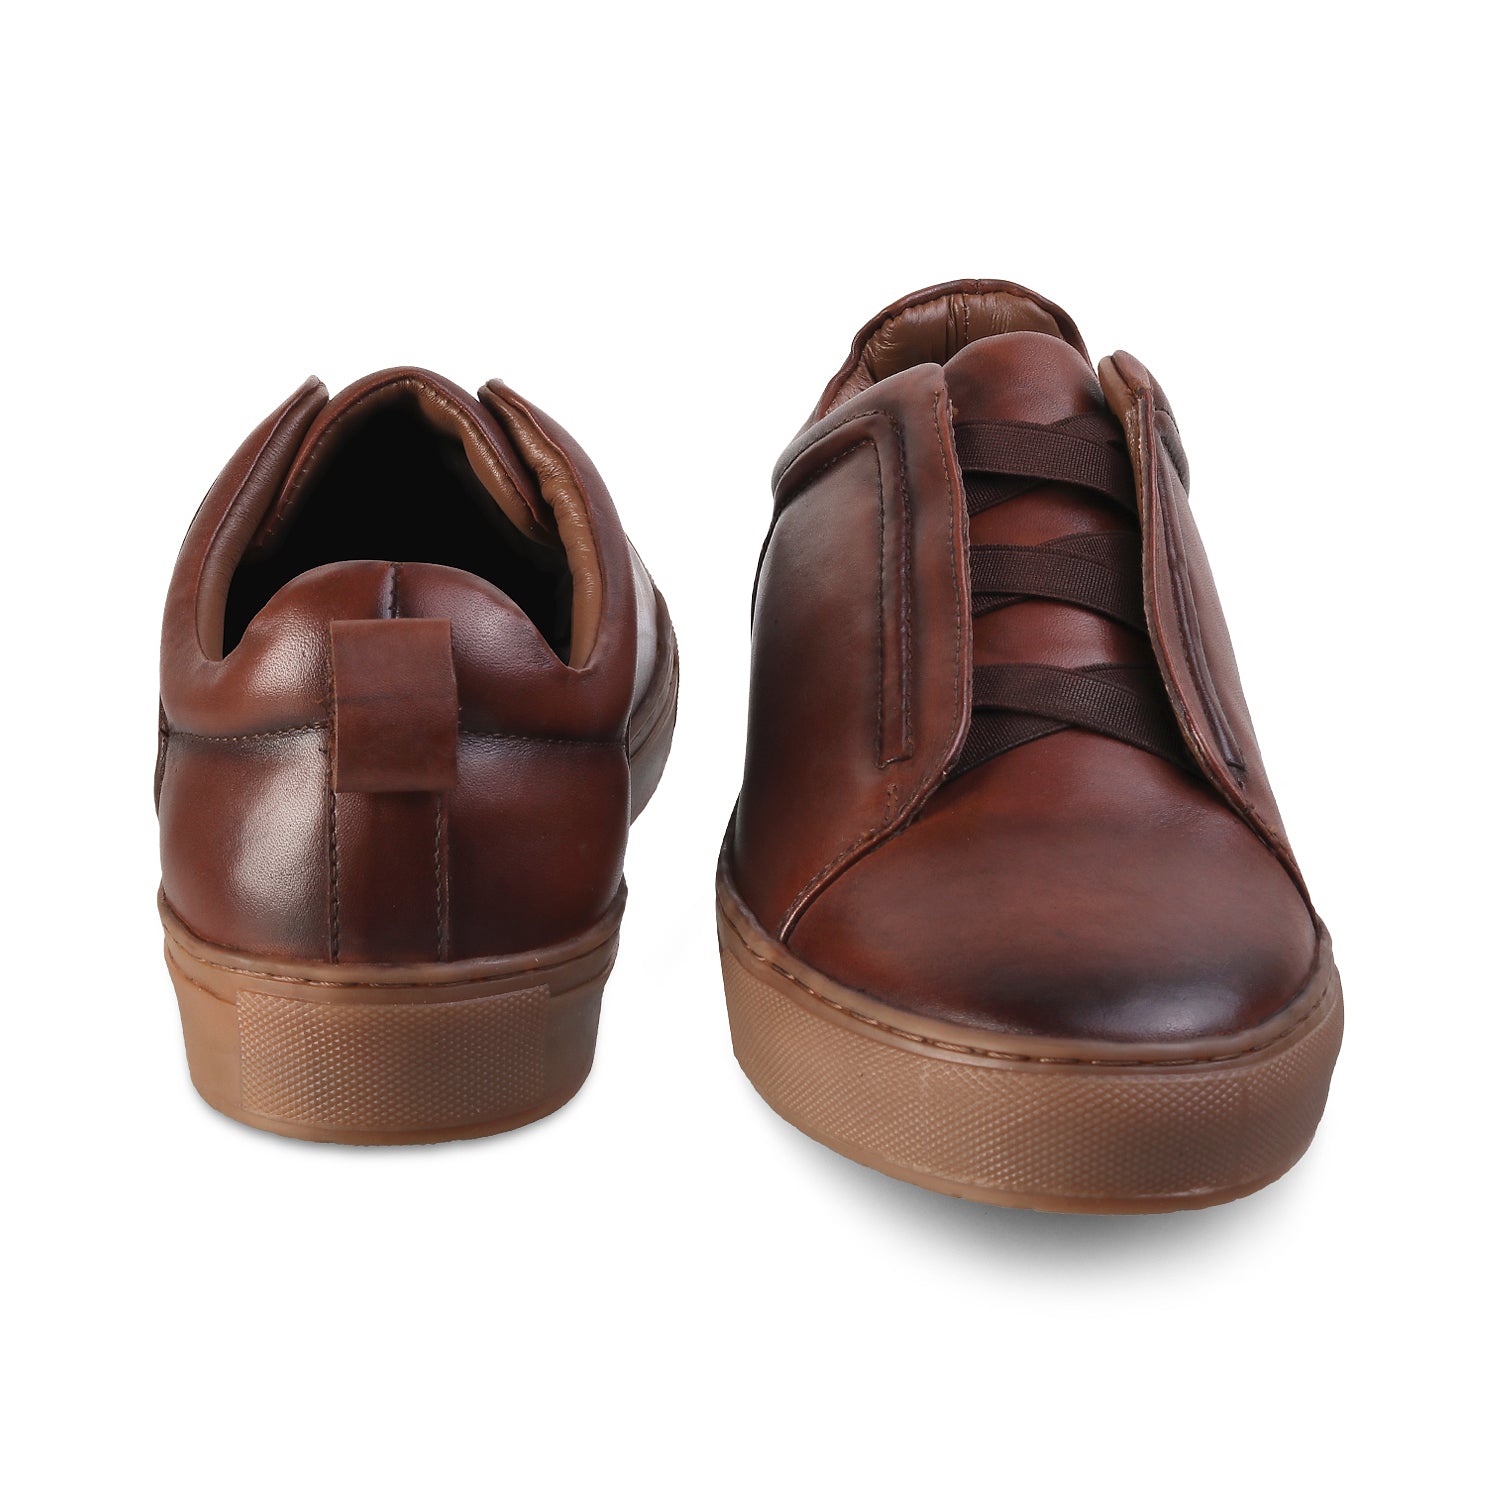 Brown Sneakers for Men Online at Tresmode.com